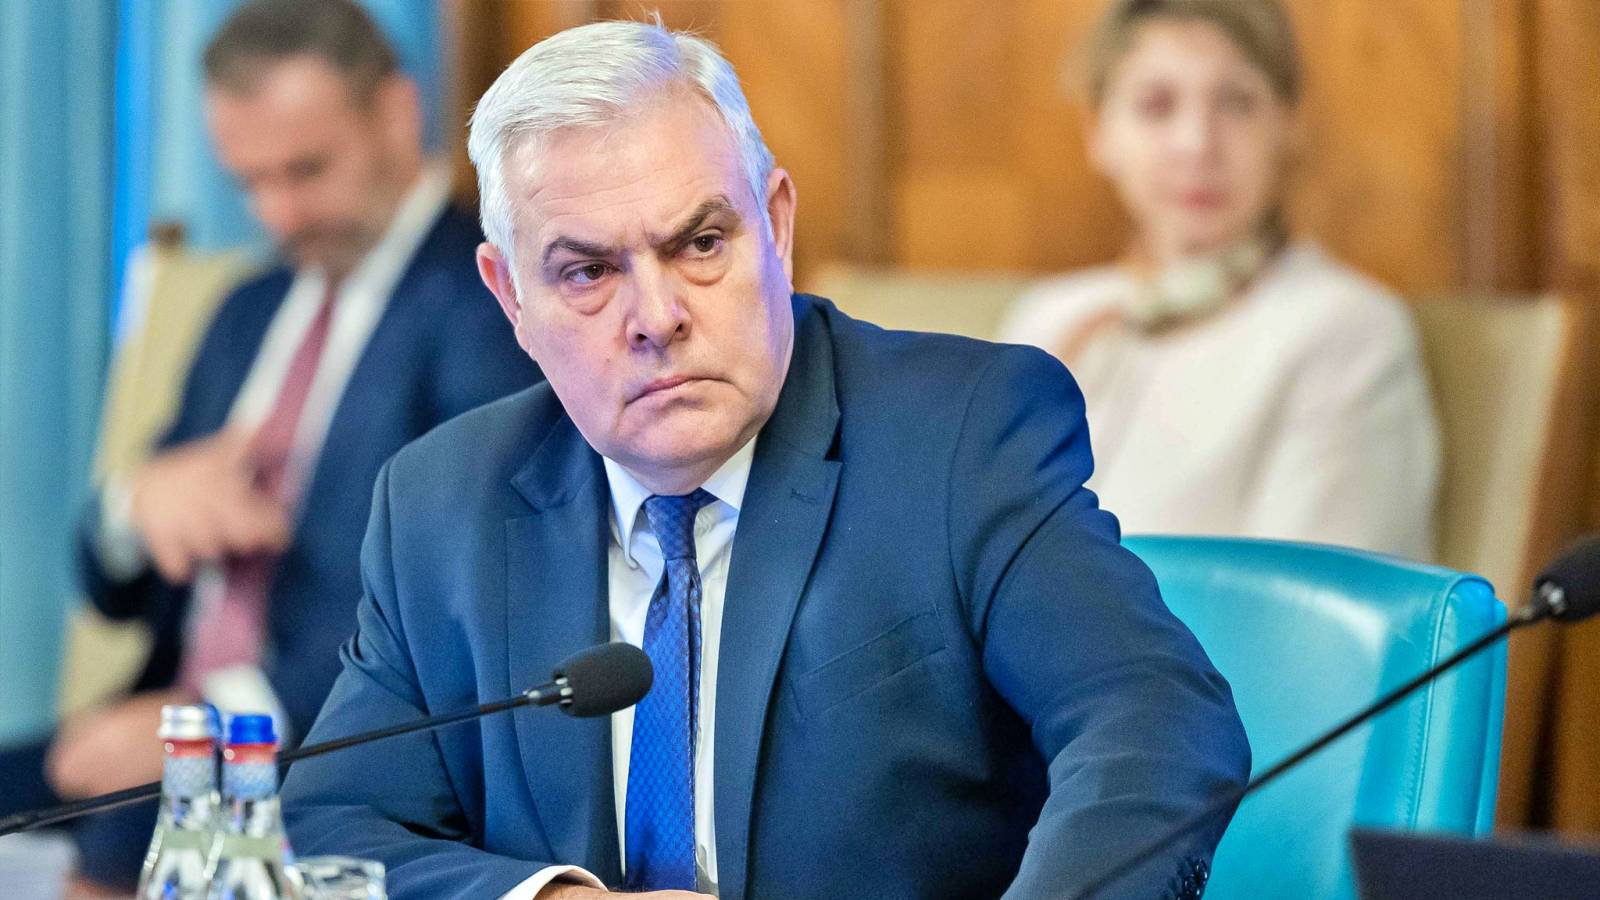 Försvarsminister Meddelande SENASTE GÅNG Beslut Europeisk nivå Ukraina krig